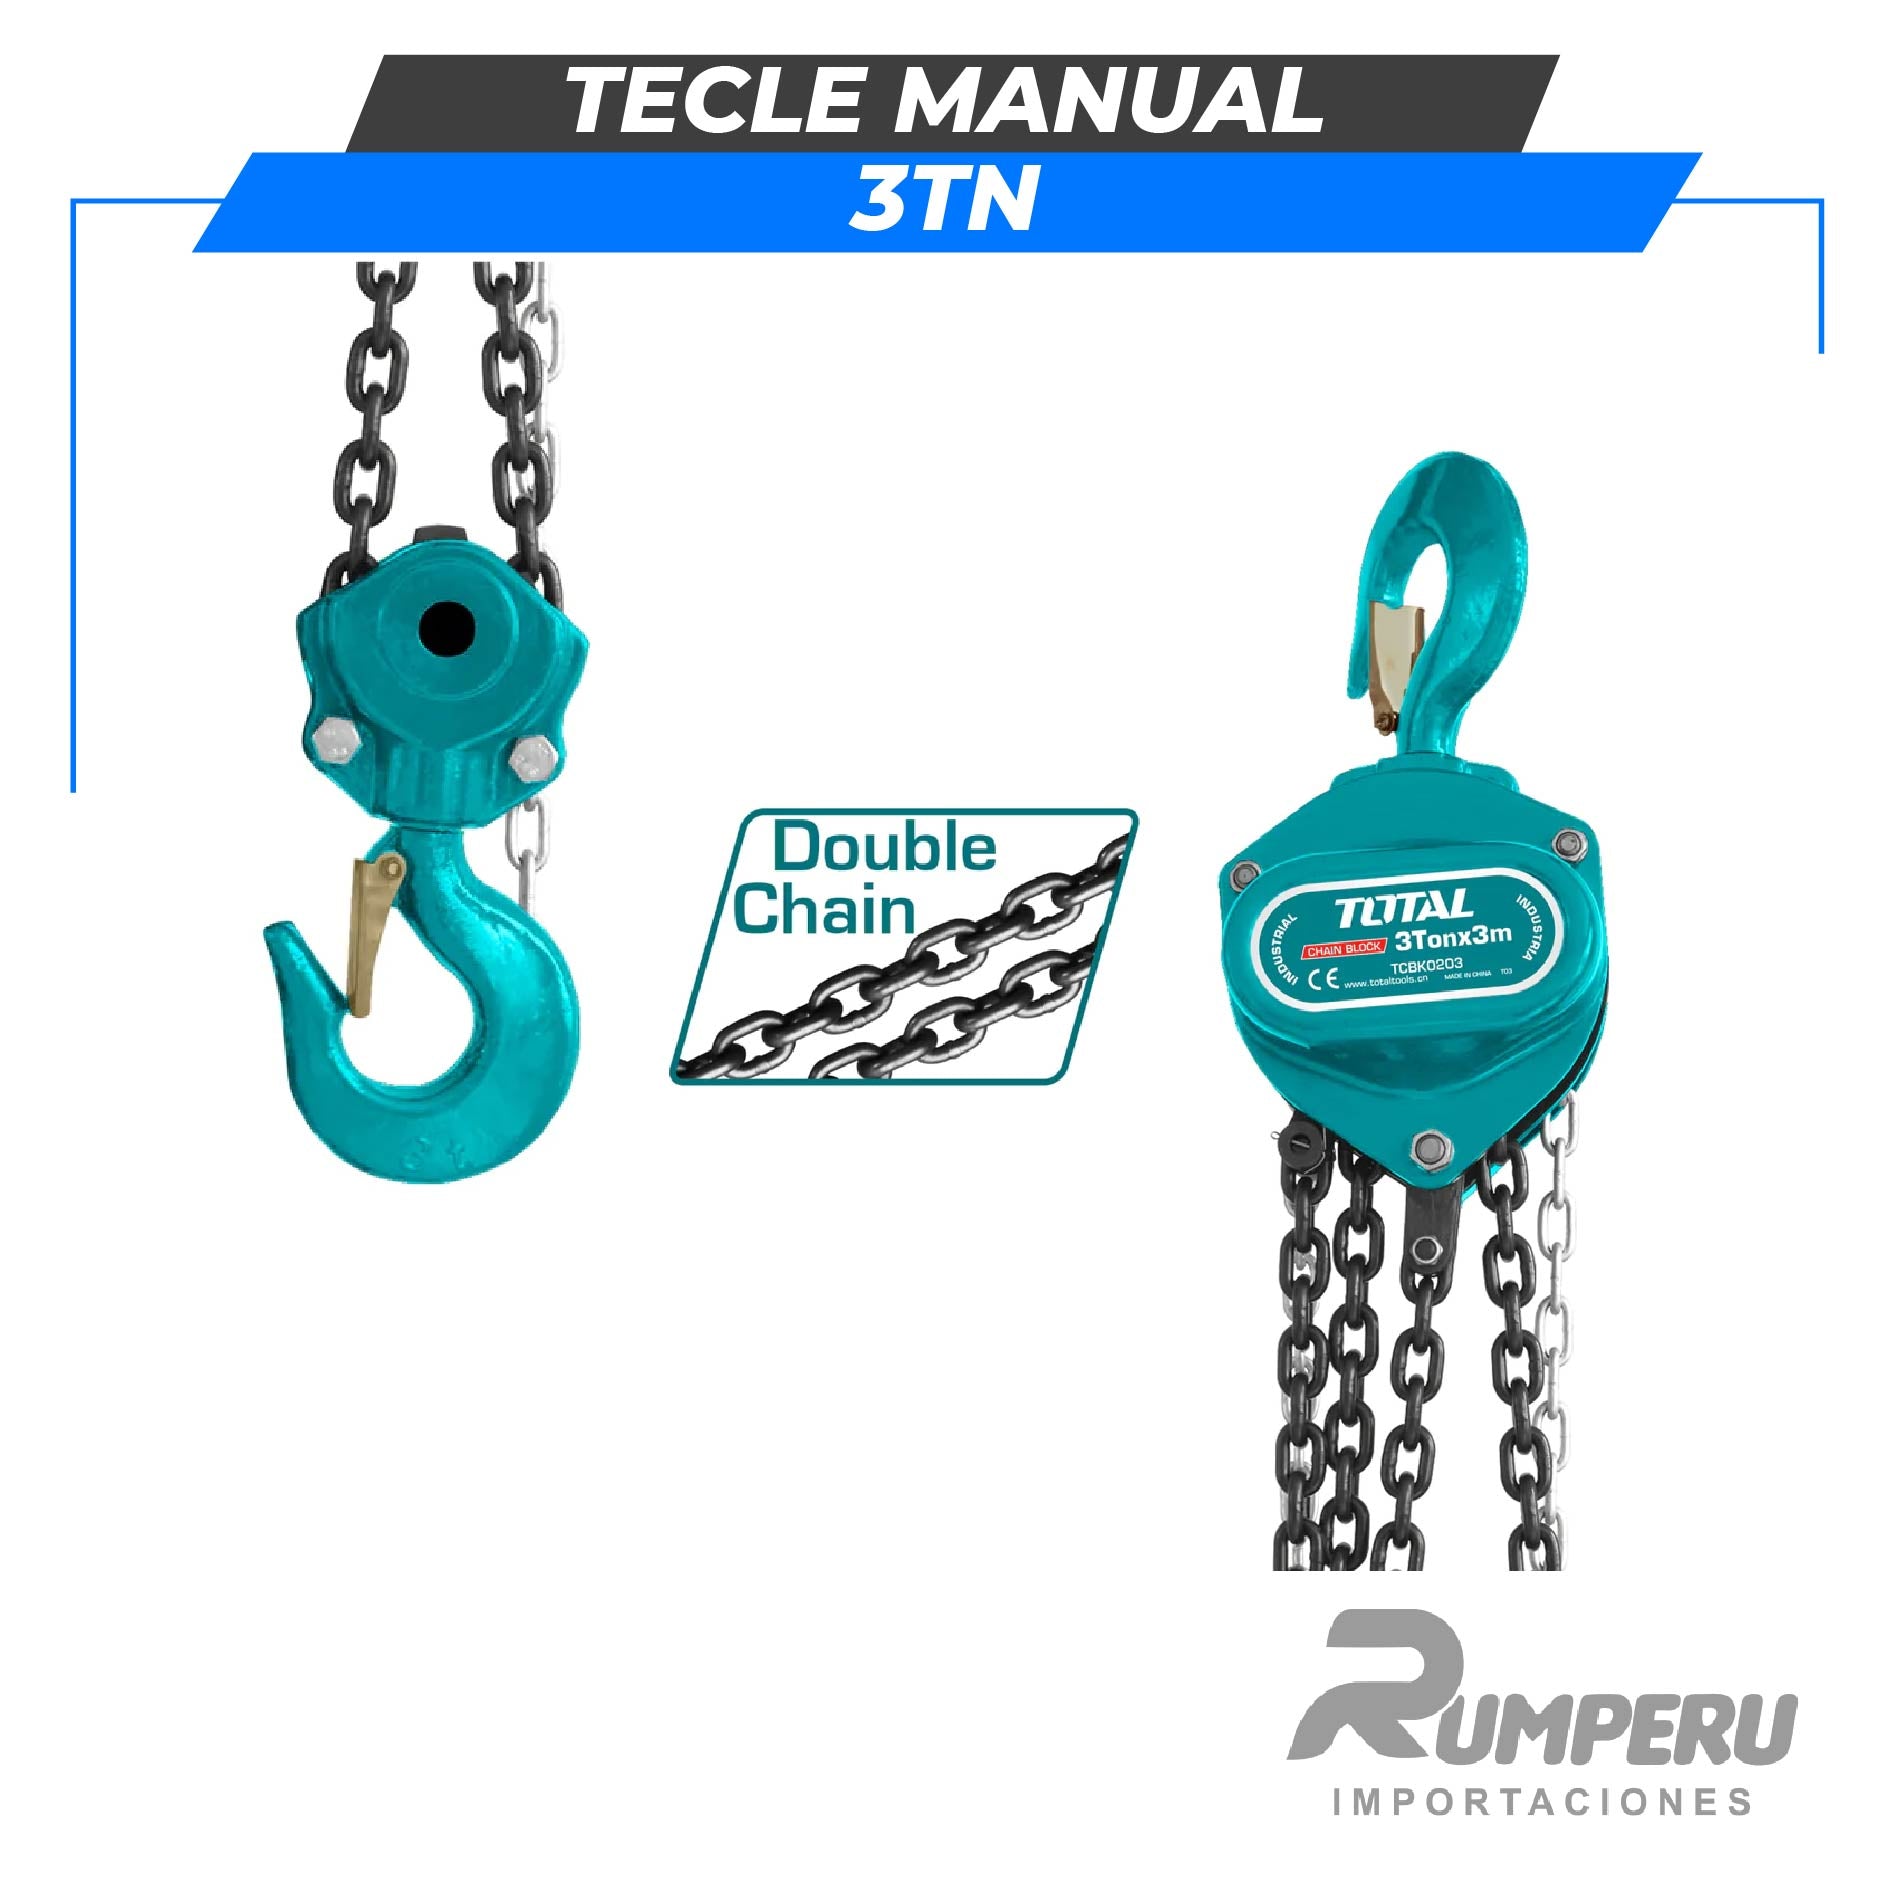 Tecle Manual 3 Tn